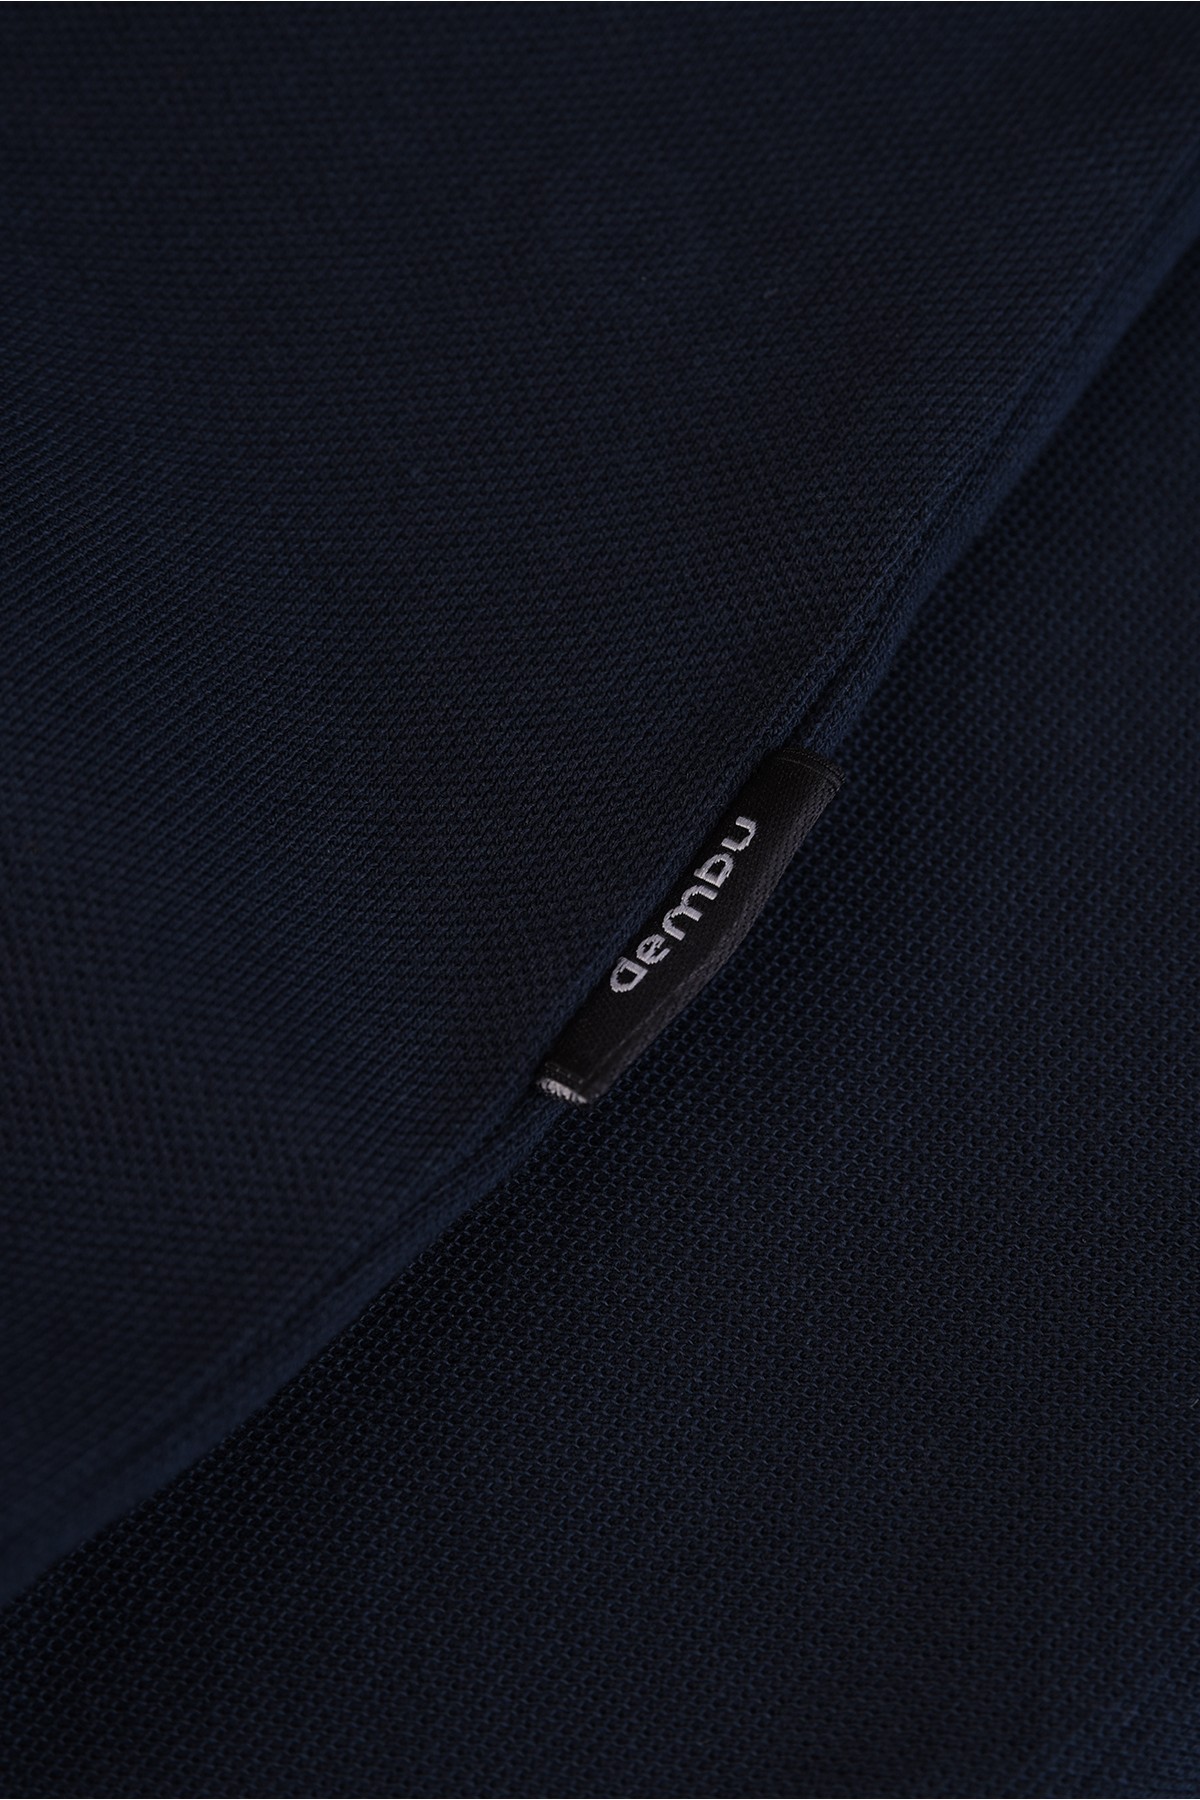 Vav Tasarım Punto Baskılı Pamuk Polo Yaka Gece Mavisi T-shirt 23'